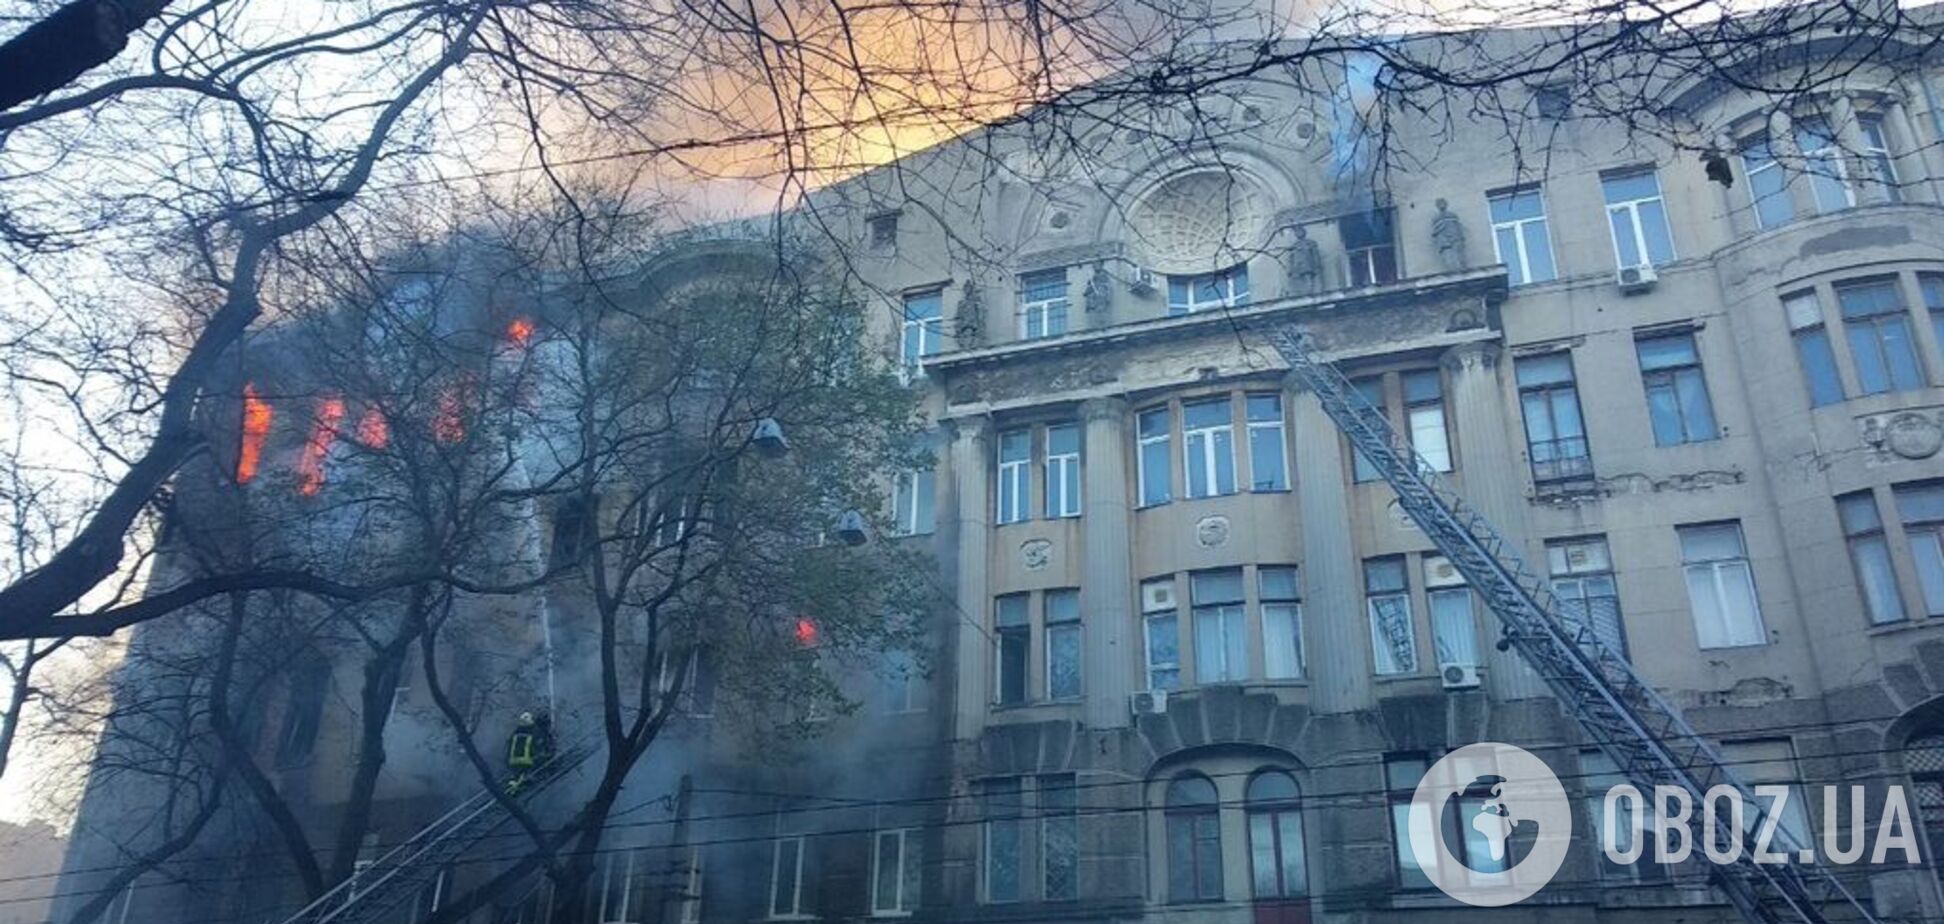 Обнародован список пострадавших в пожаре в Одессе: стало известно о первой жертве